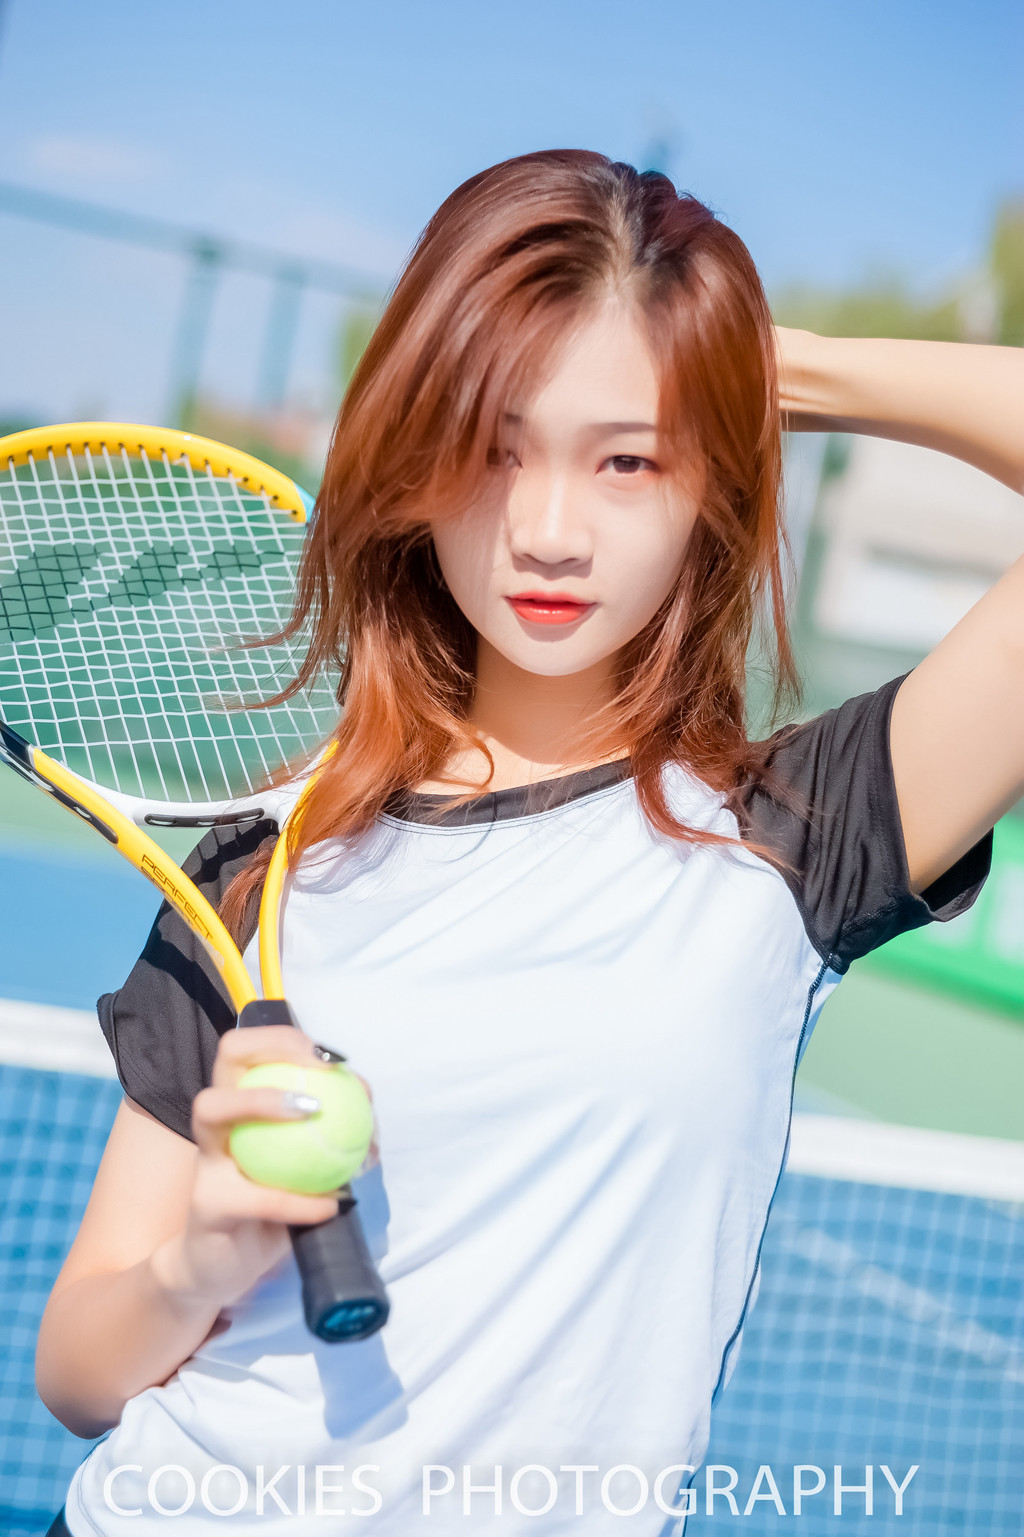 靓妹摄影:阳光明媚 活力十足的网球女孩